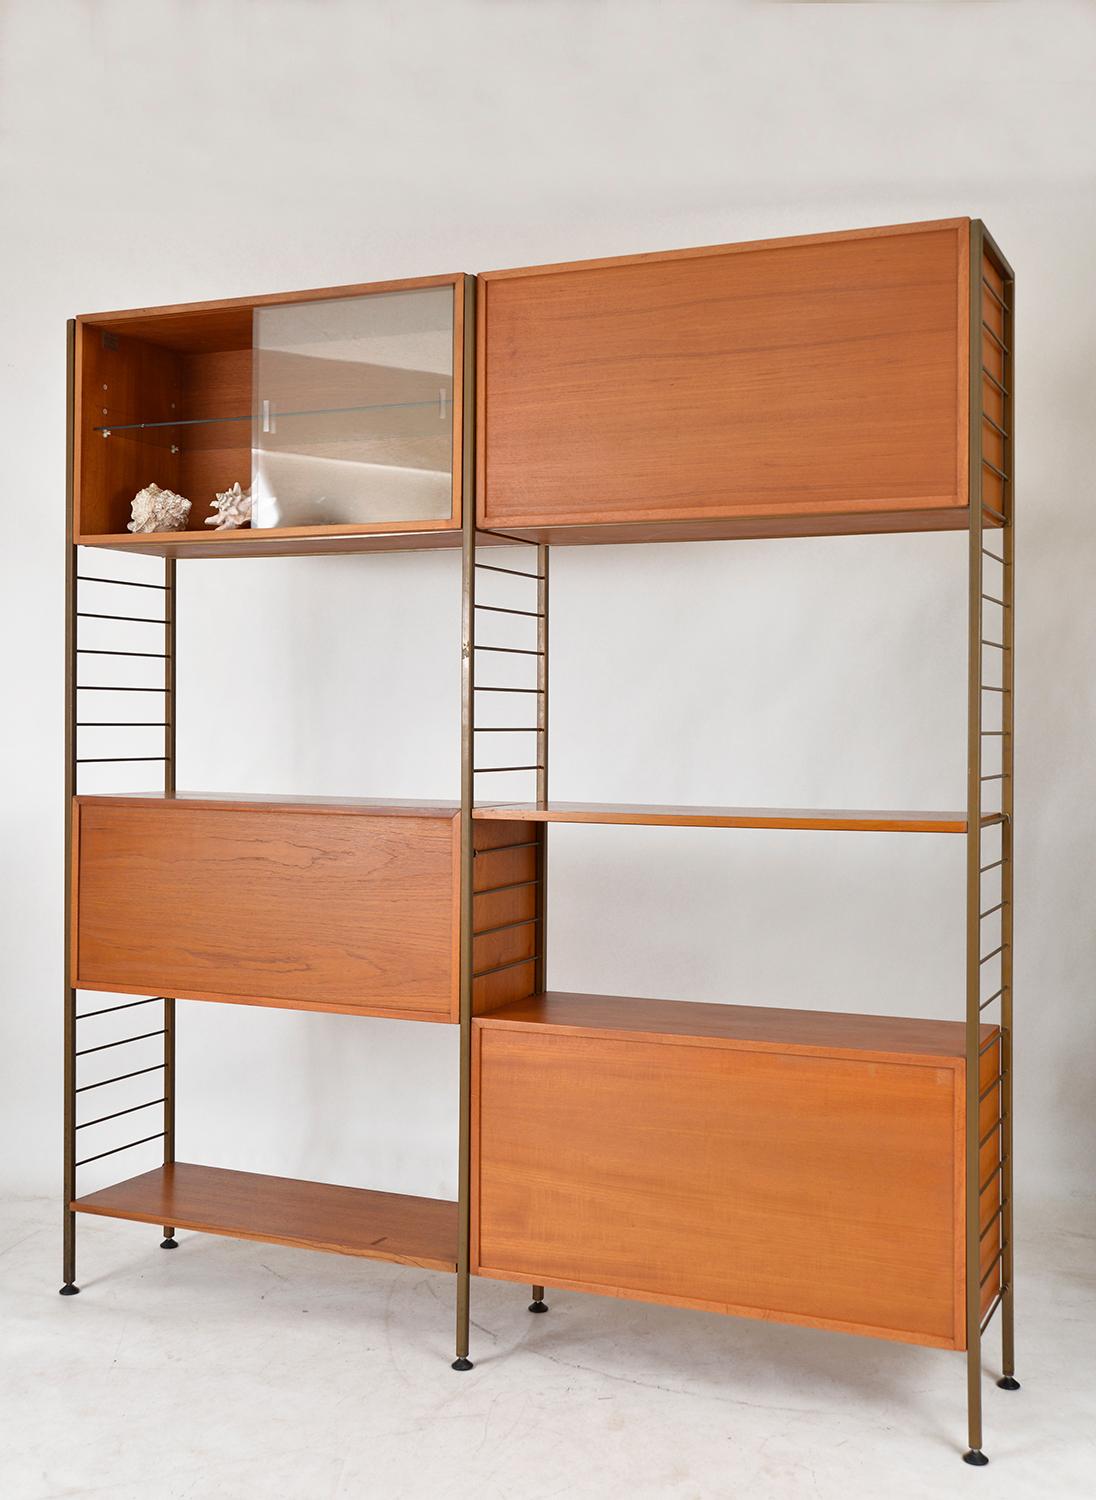 60s Staples Ladderax Freestanding Modular Teak Shelving System Room Divider Desk 1